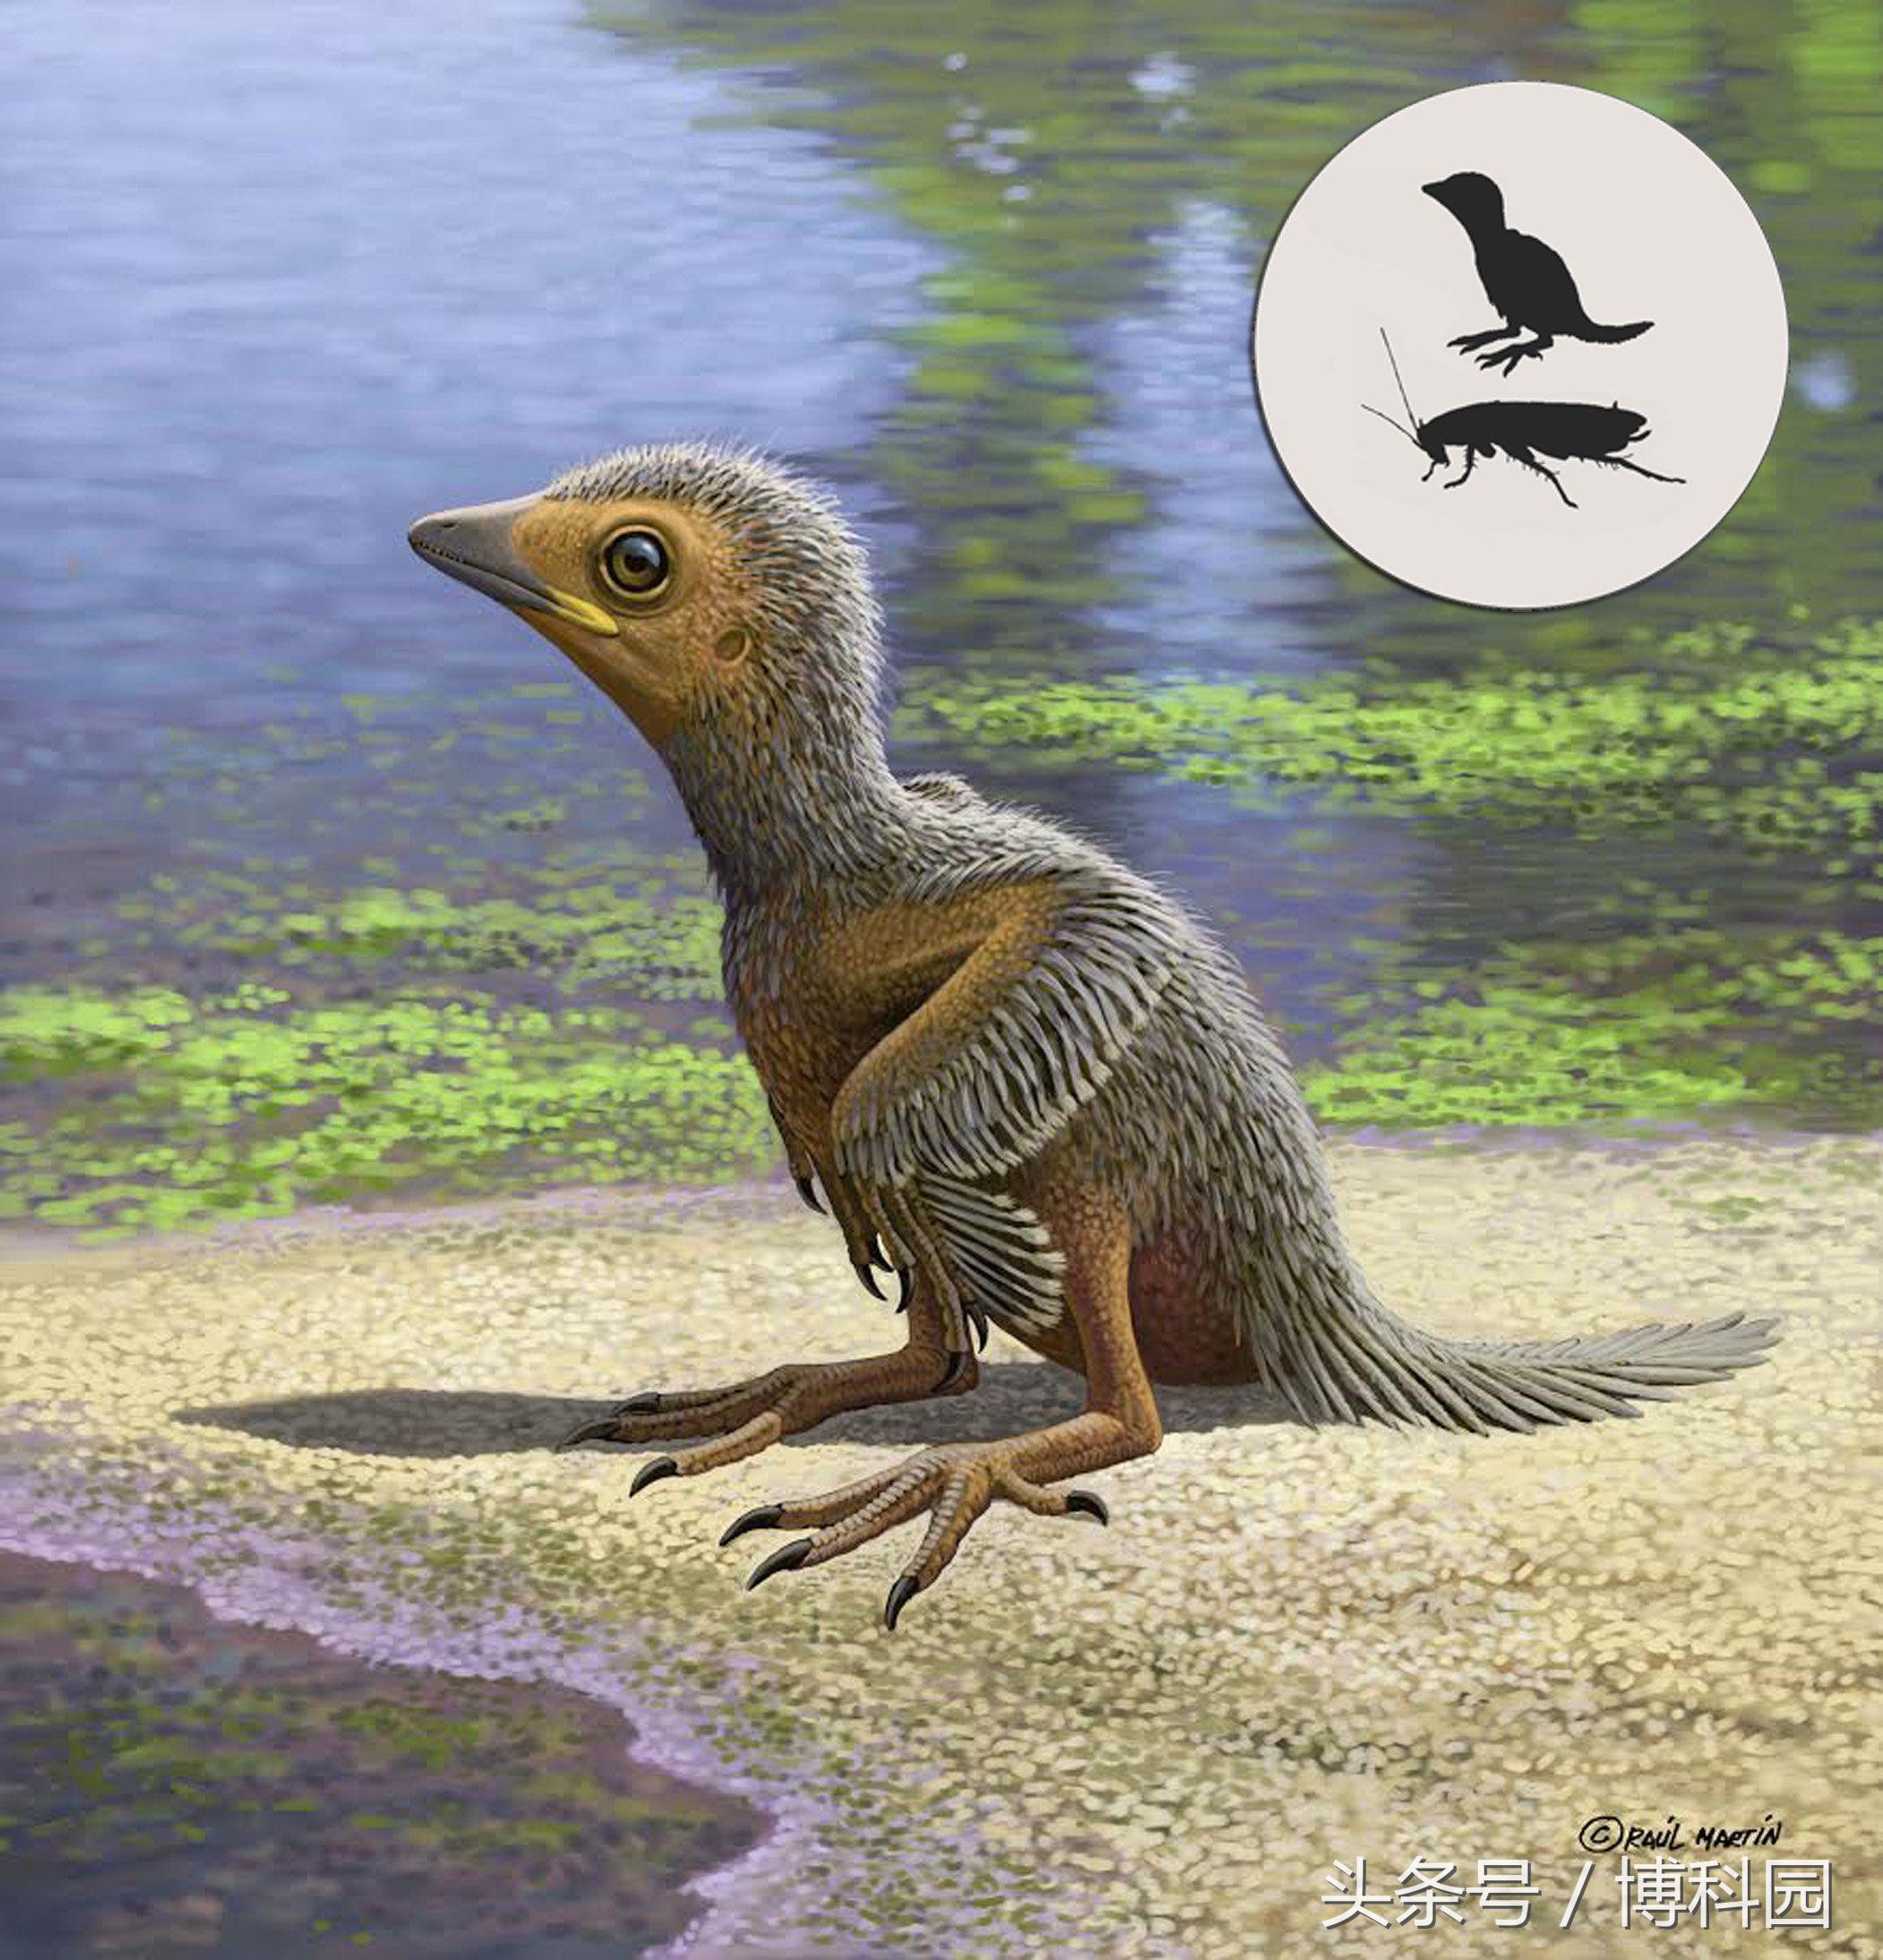 1.27亿年前的幼鸟化石揭示了禽类进化过程